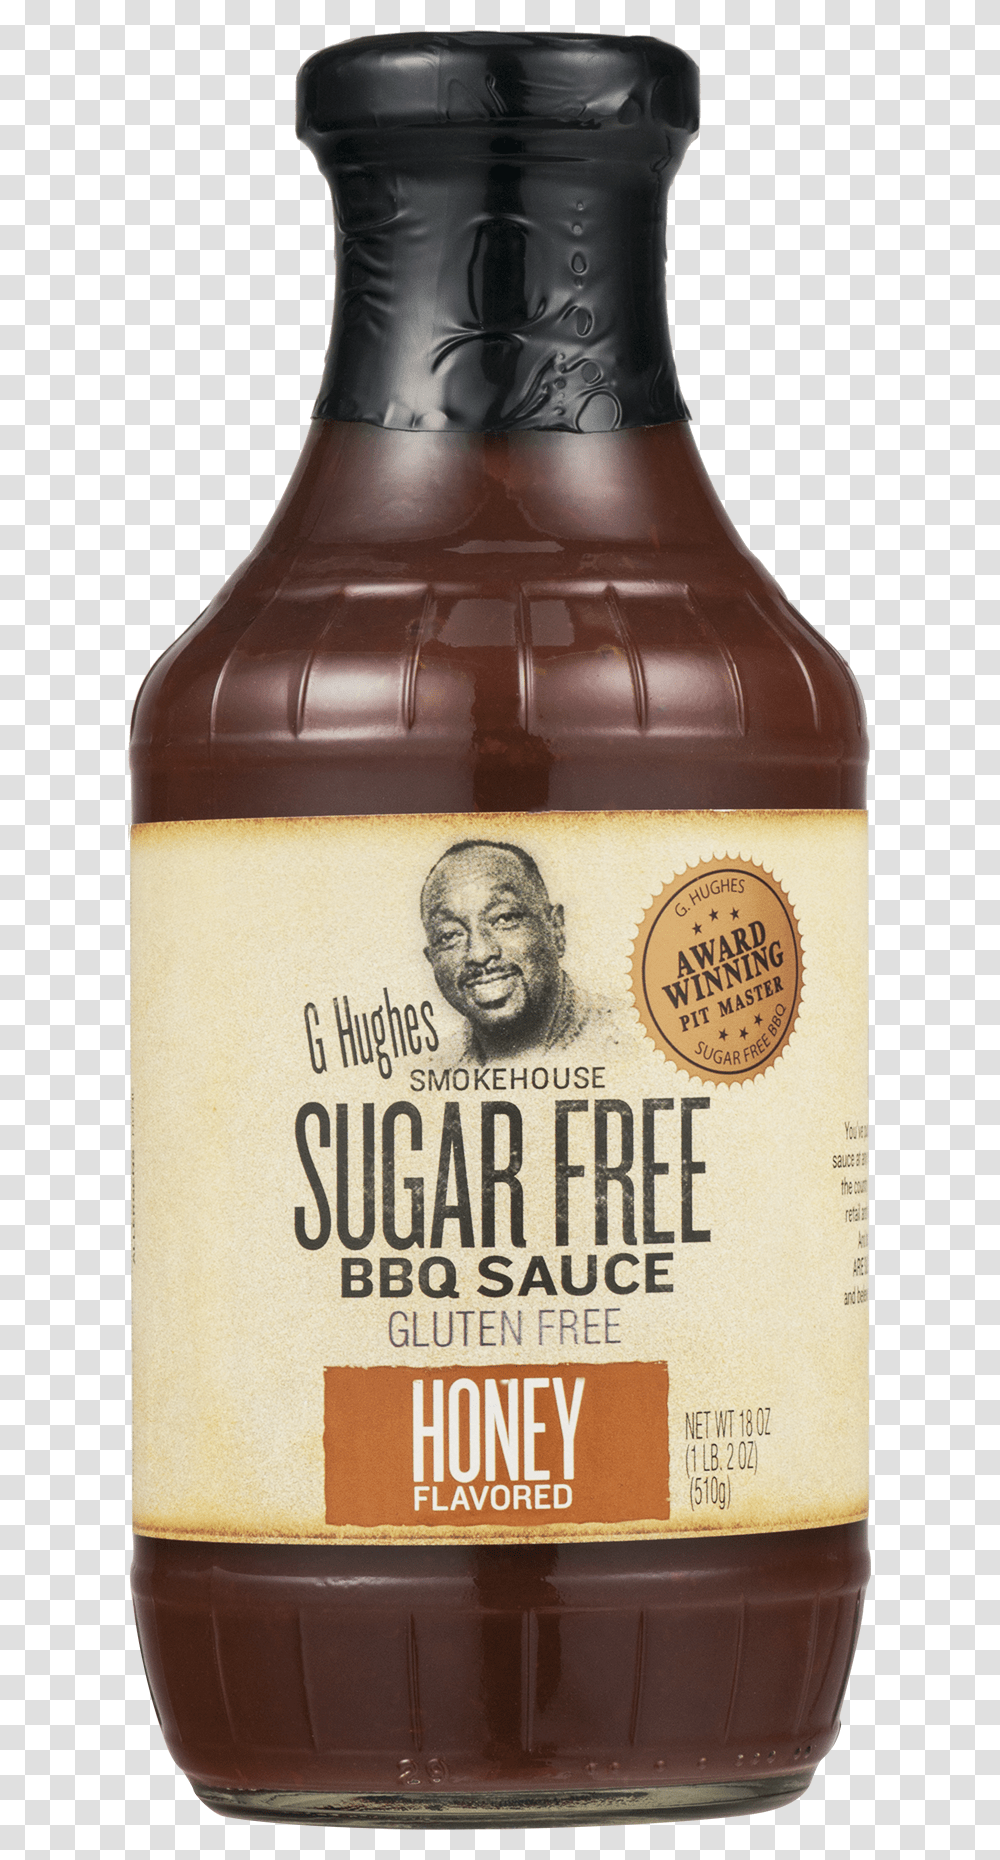 G Hughes Sugar Free Bbq Sauce Honey, Beer, Alcohol, Beverage, Bottle Transparent Png